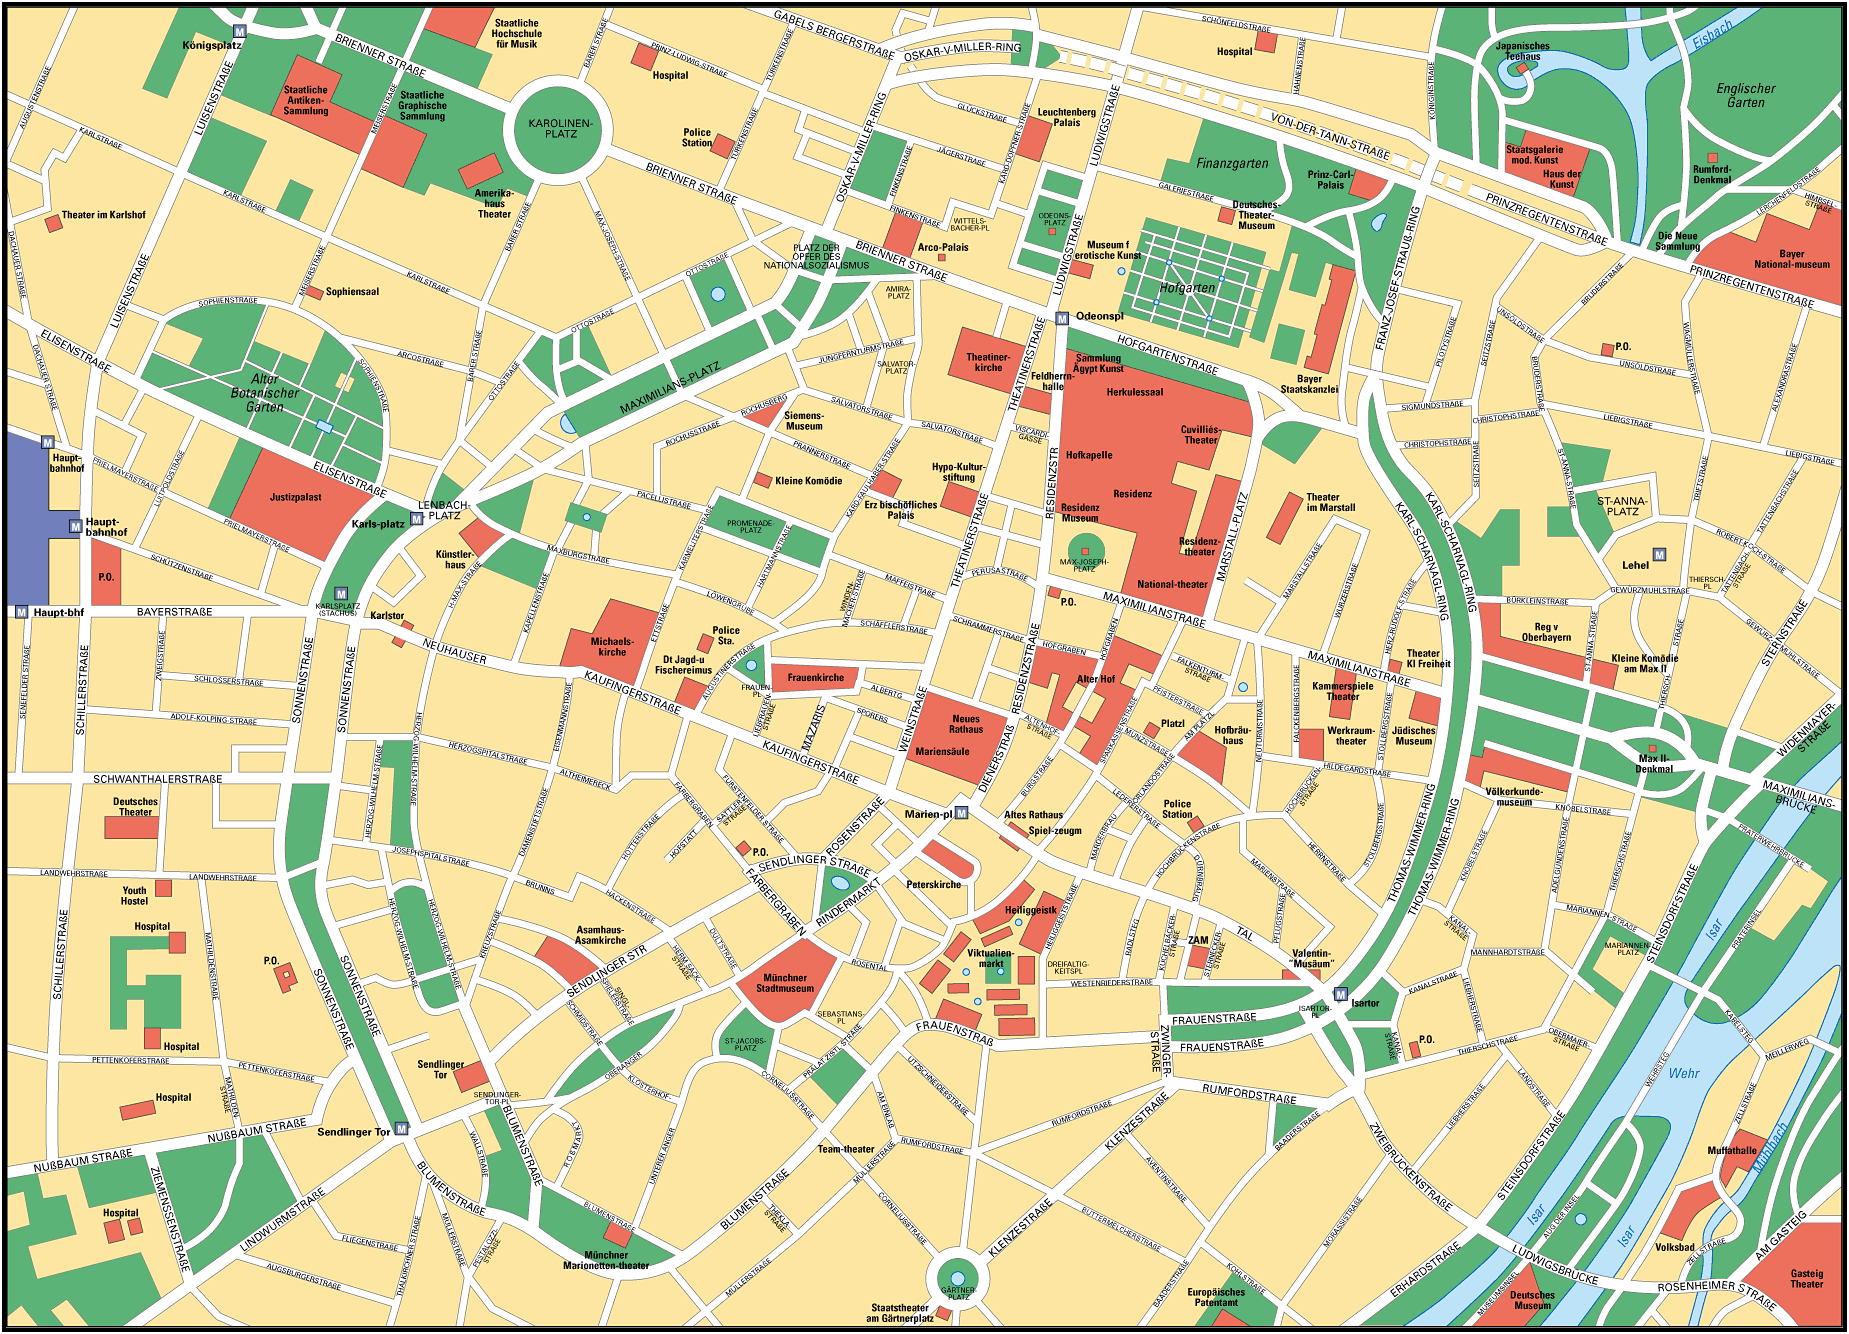 Map of Munich - Full size